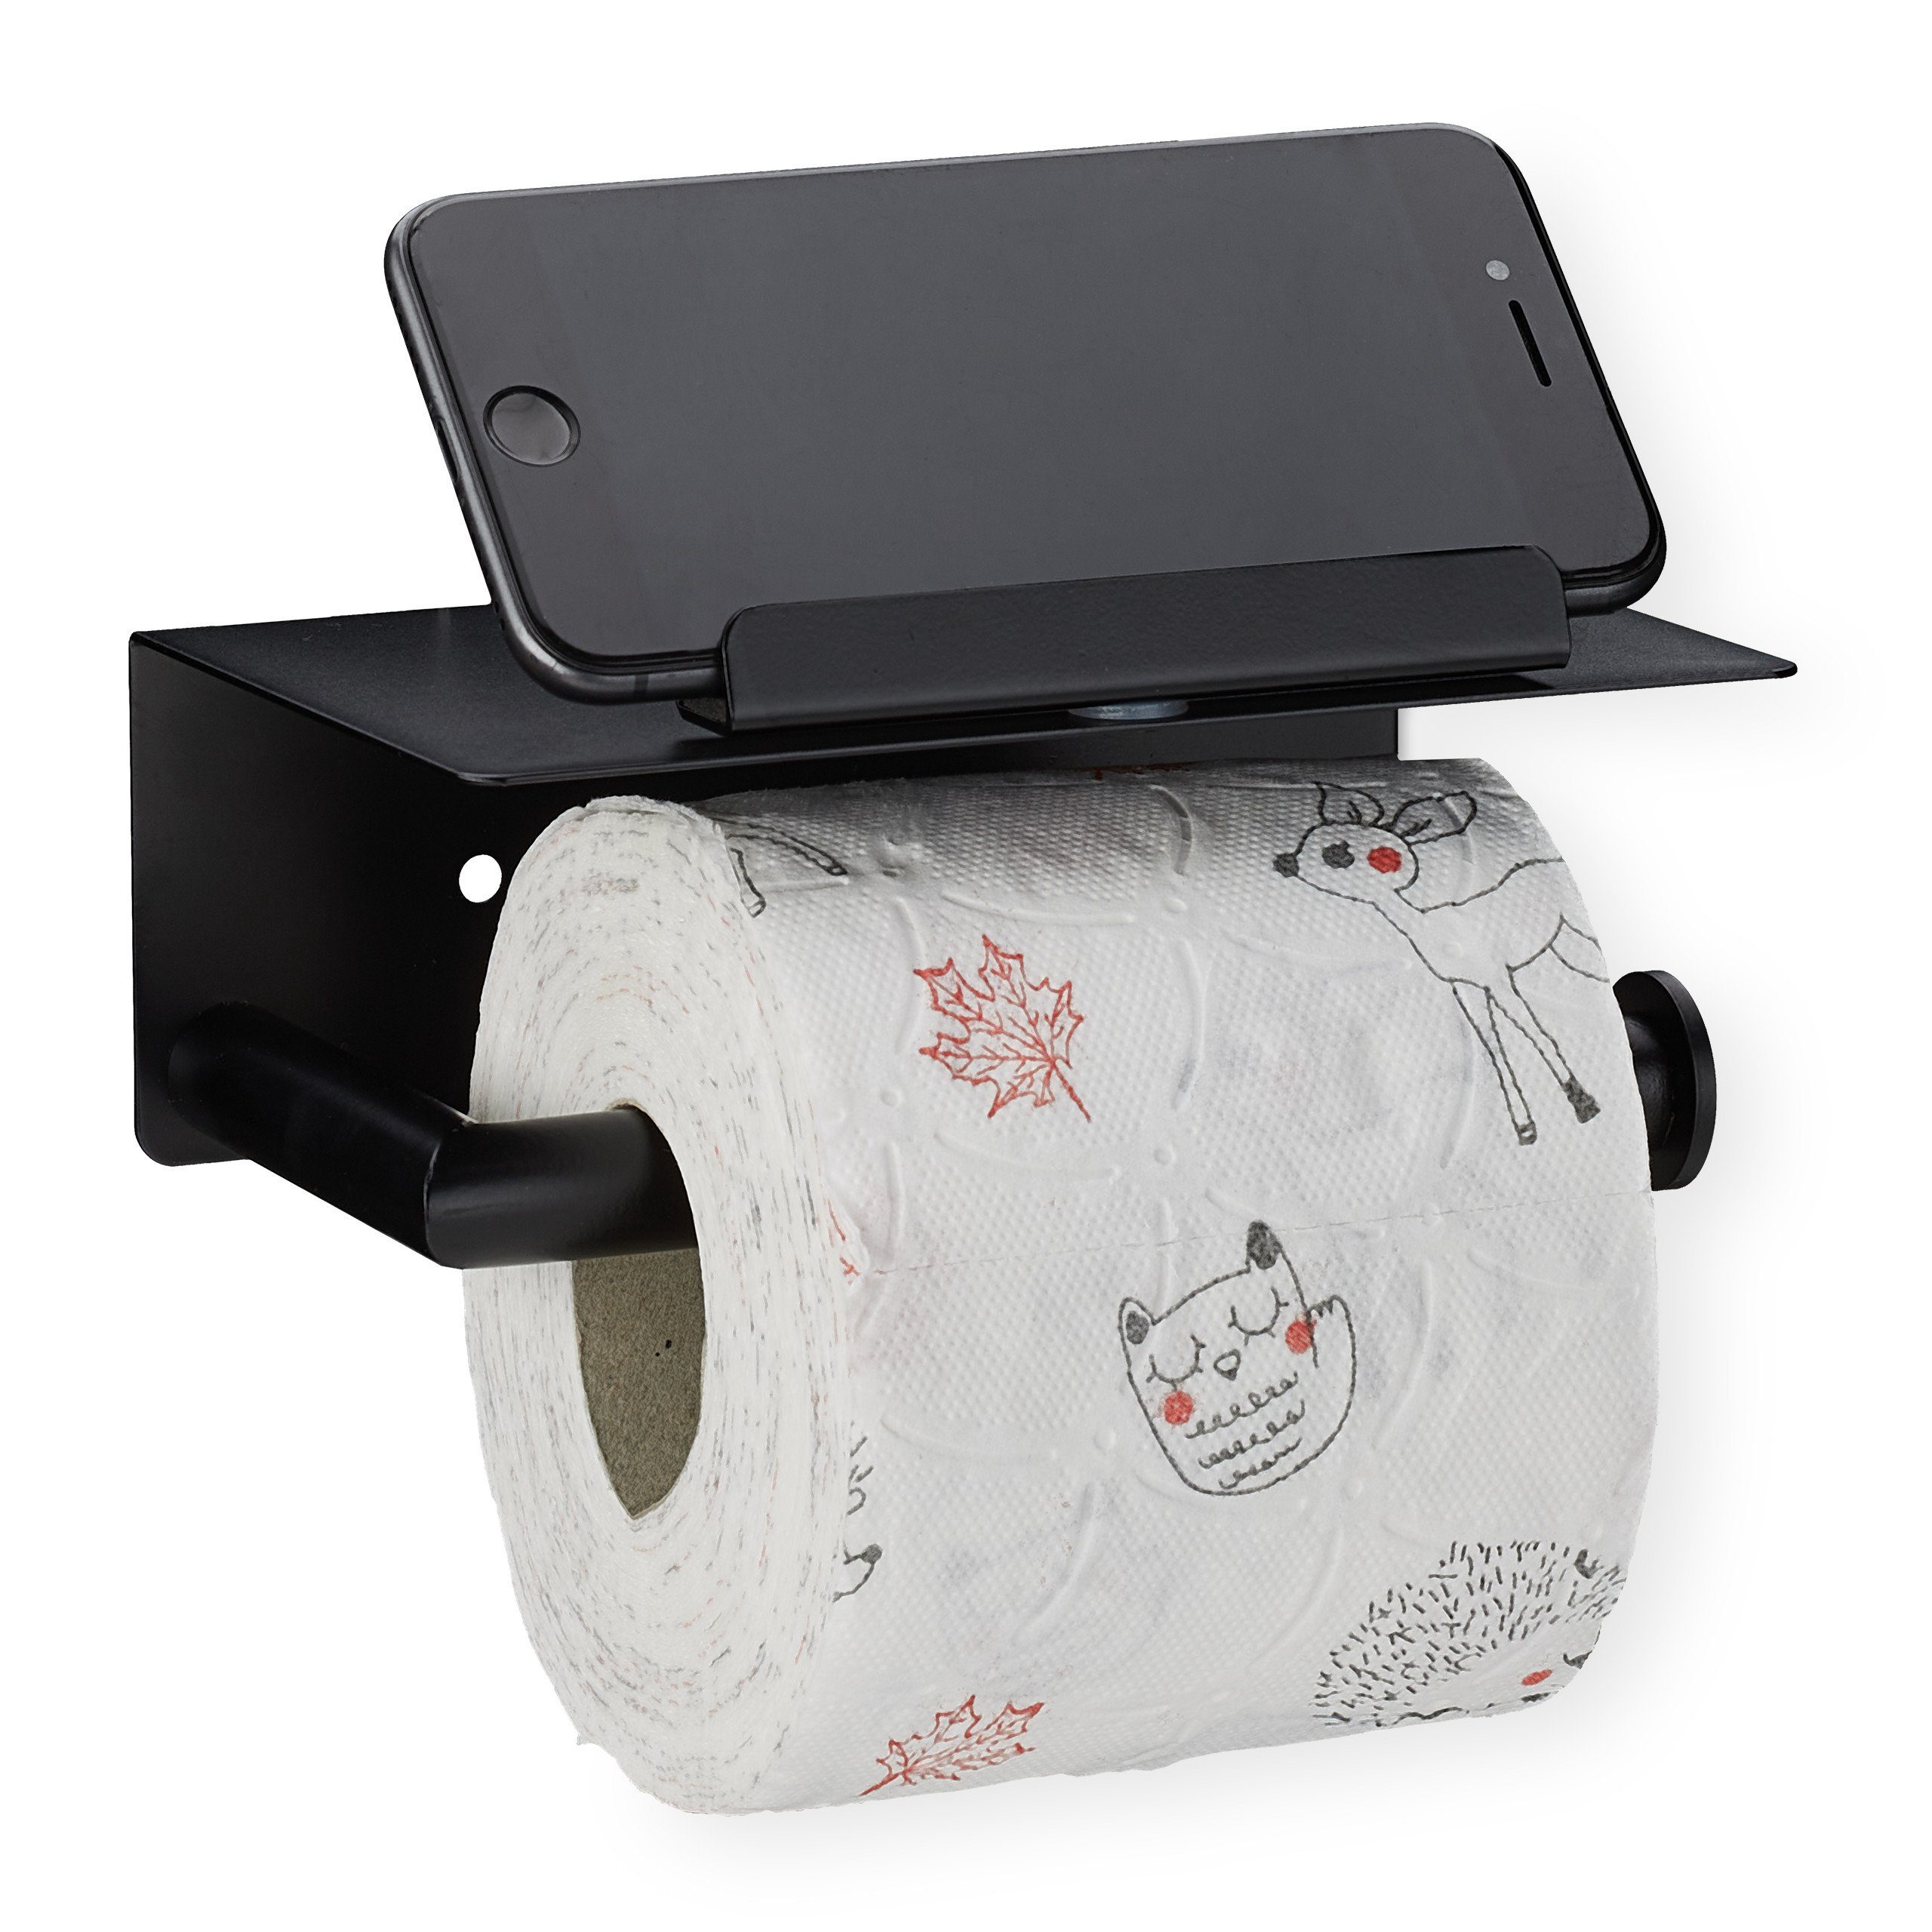 Toilettenpapierhalter mit Ablage Klopapierhalter Klorollenhalter Aluminium Neu 